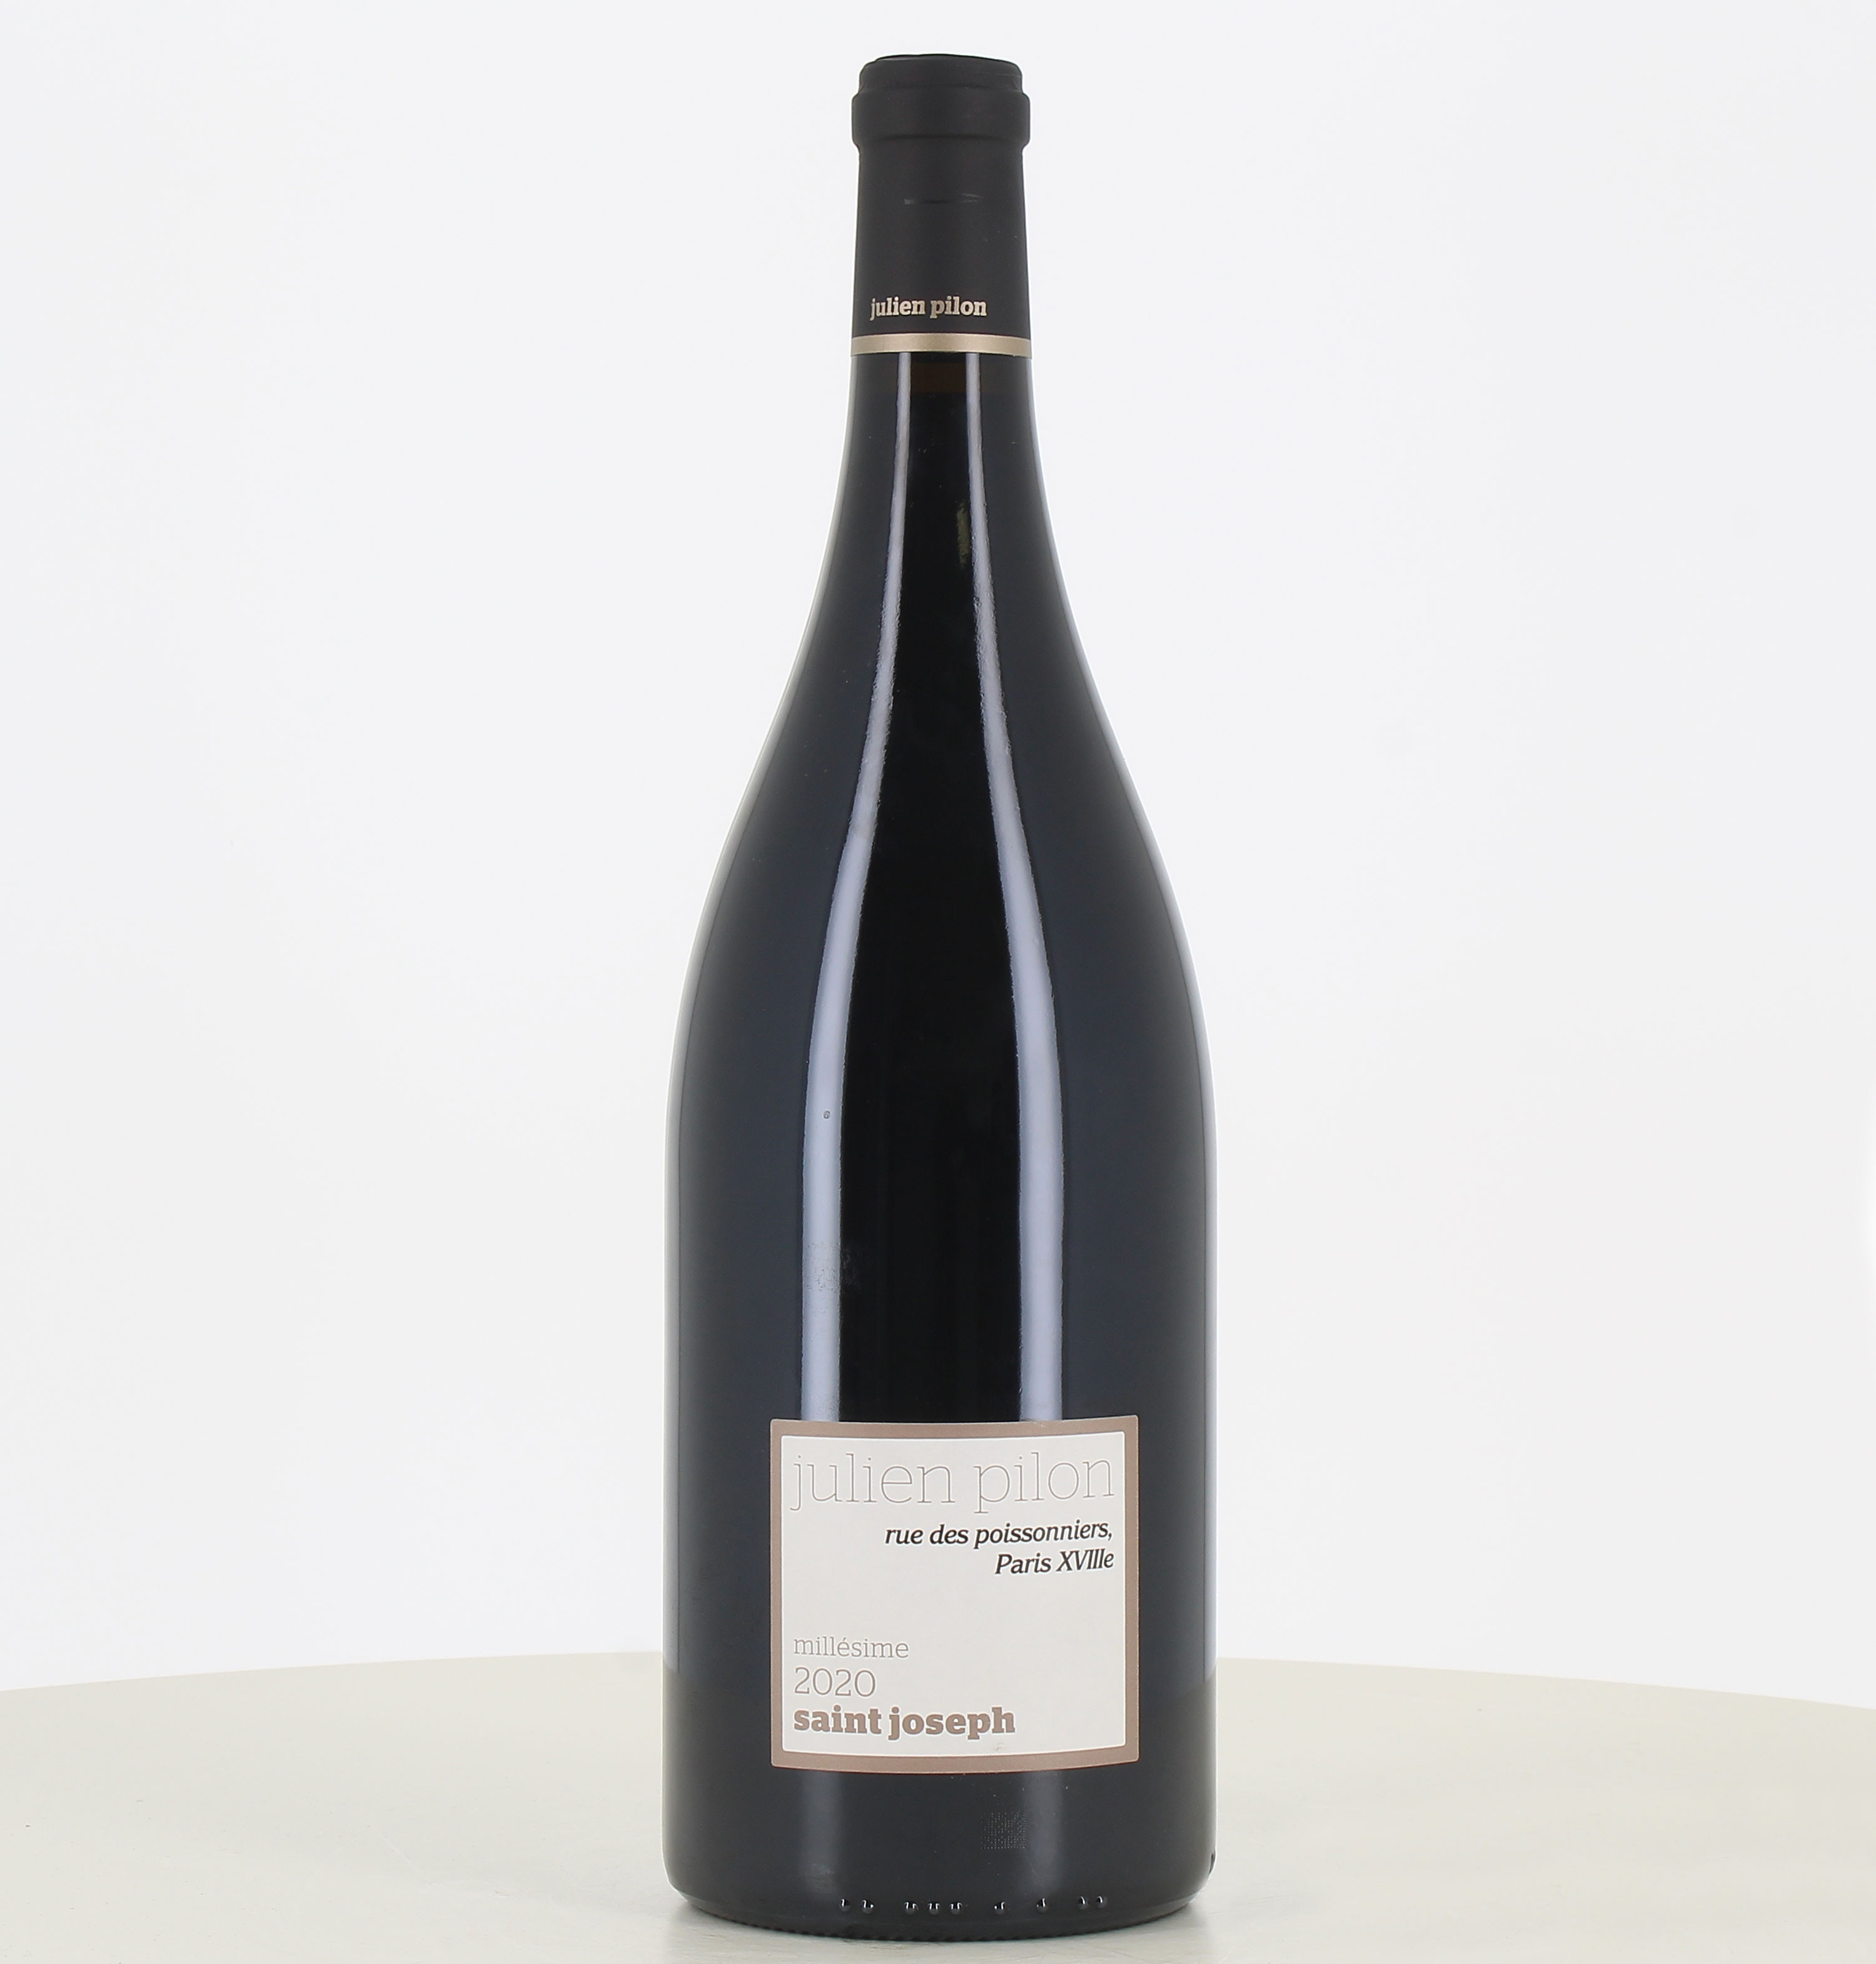 Magnum vin rouge Saint Joseph Rue des poissonniers Julien Pilon 2020 